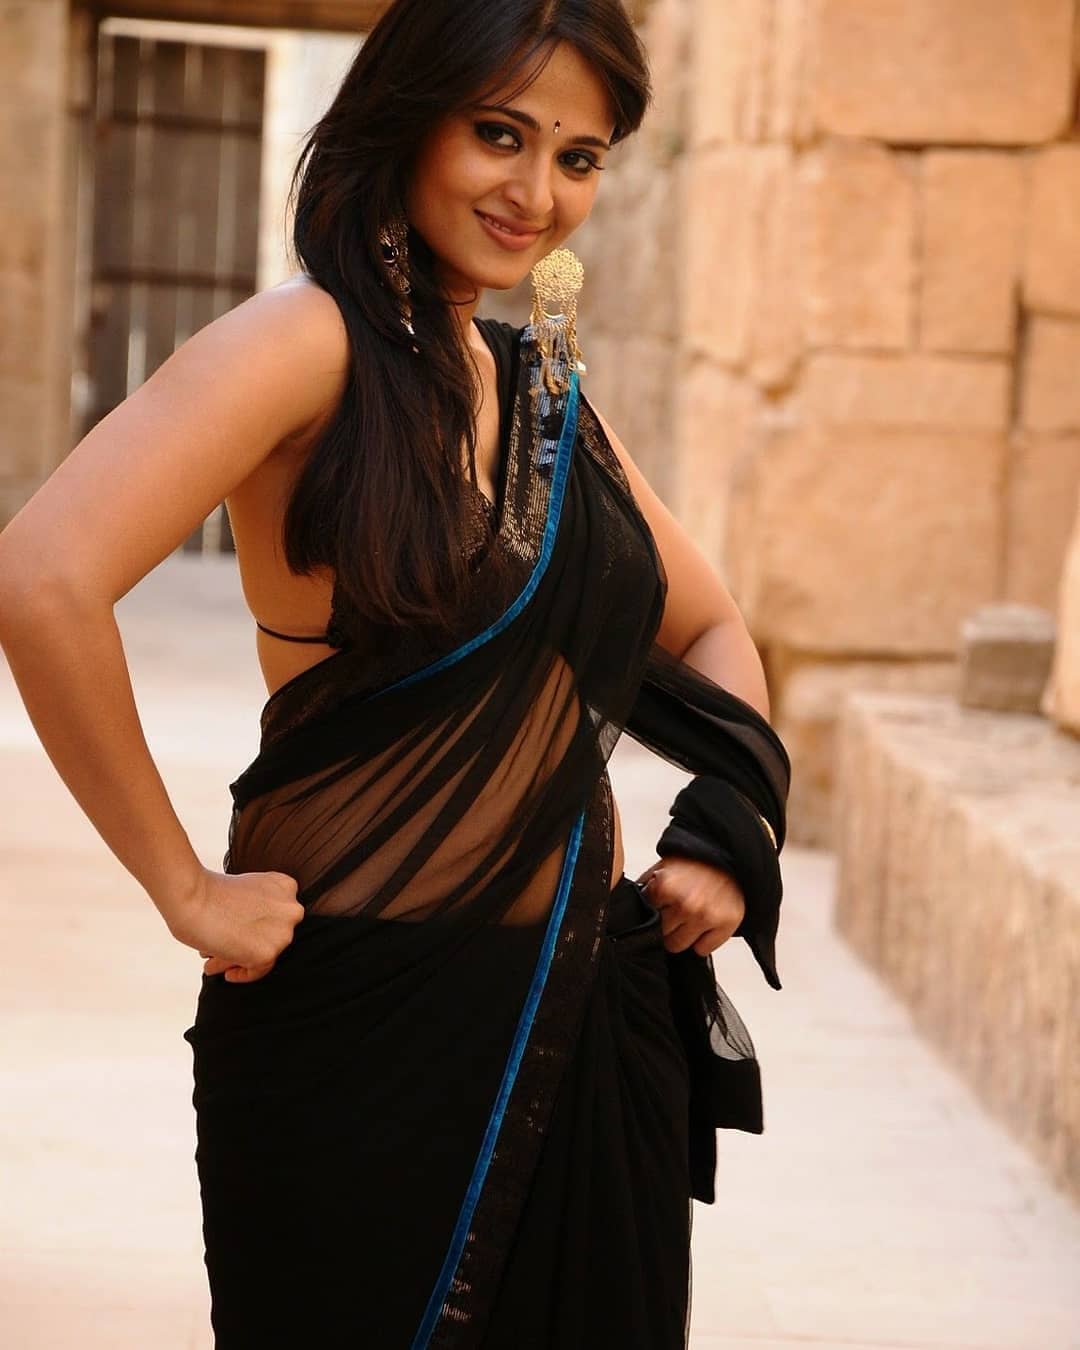 Anushka Shetty Hot And Sexy Black Saree Photos